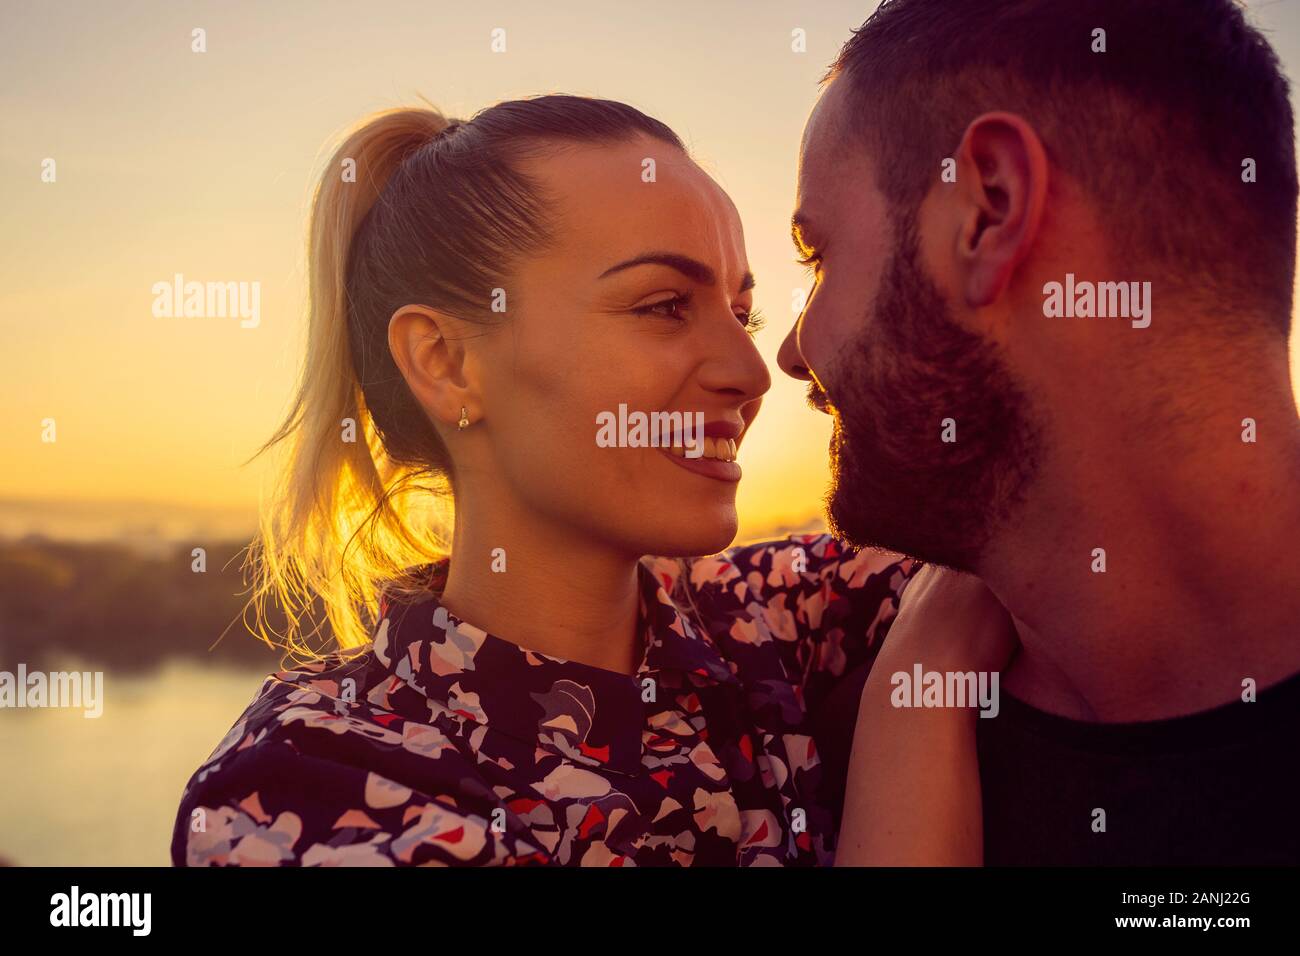 Couple romantique au coucher du soleil. Smiling young man and woman jouit de coucher du soleil Banque D'Images